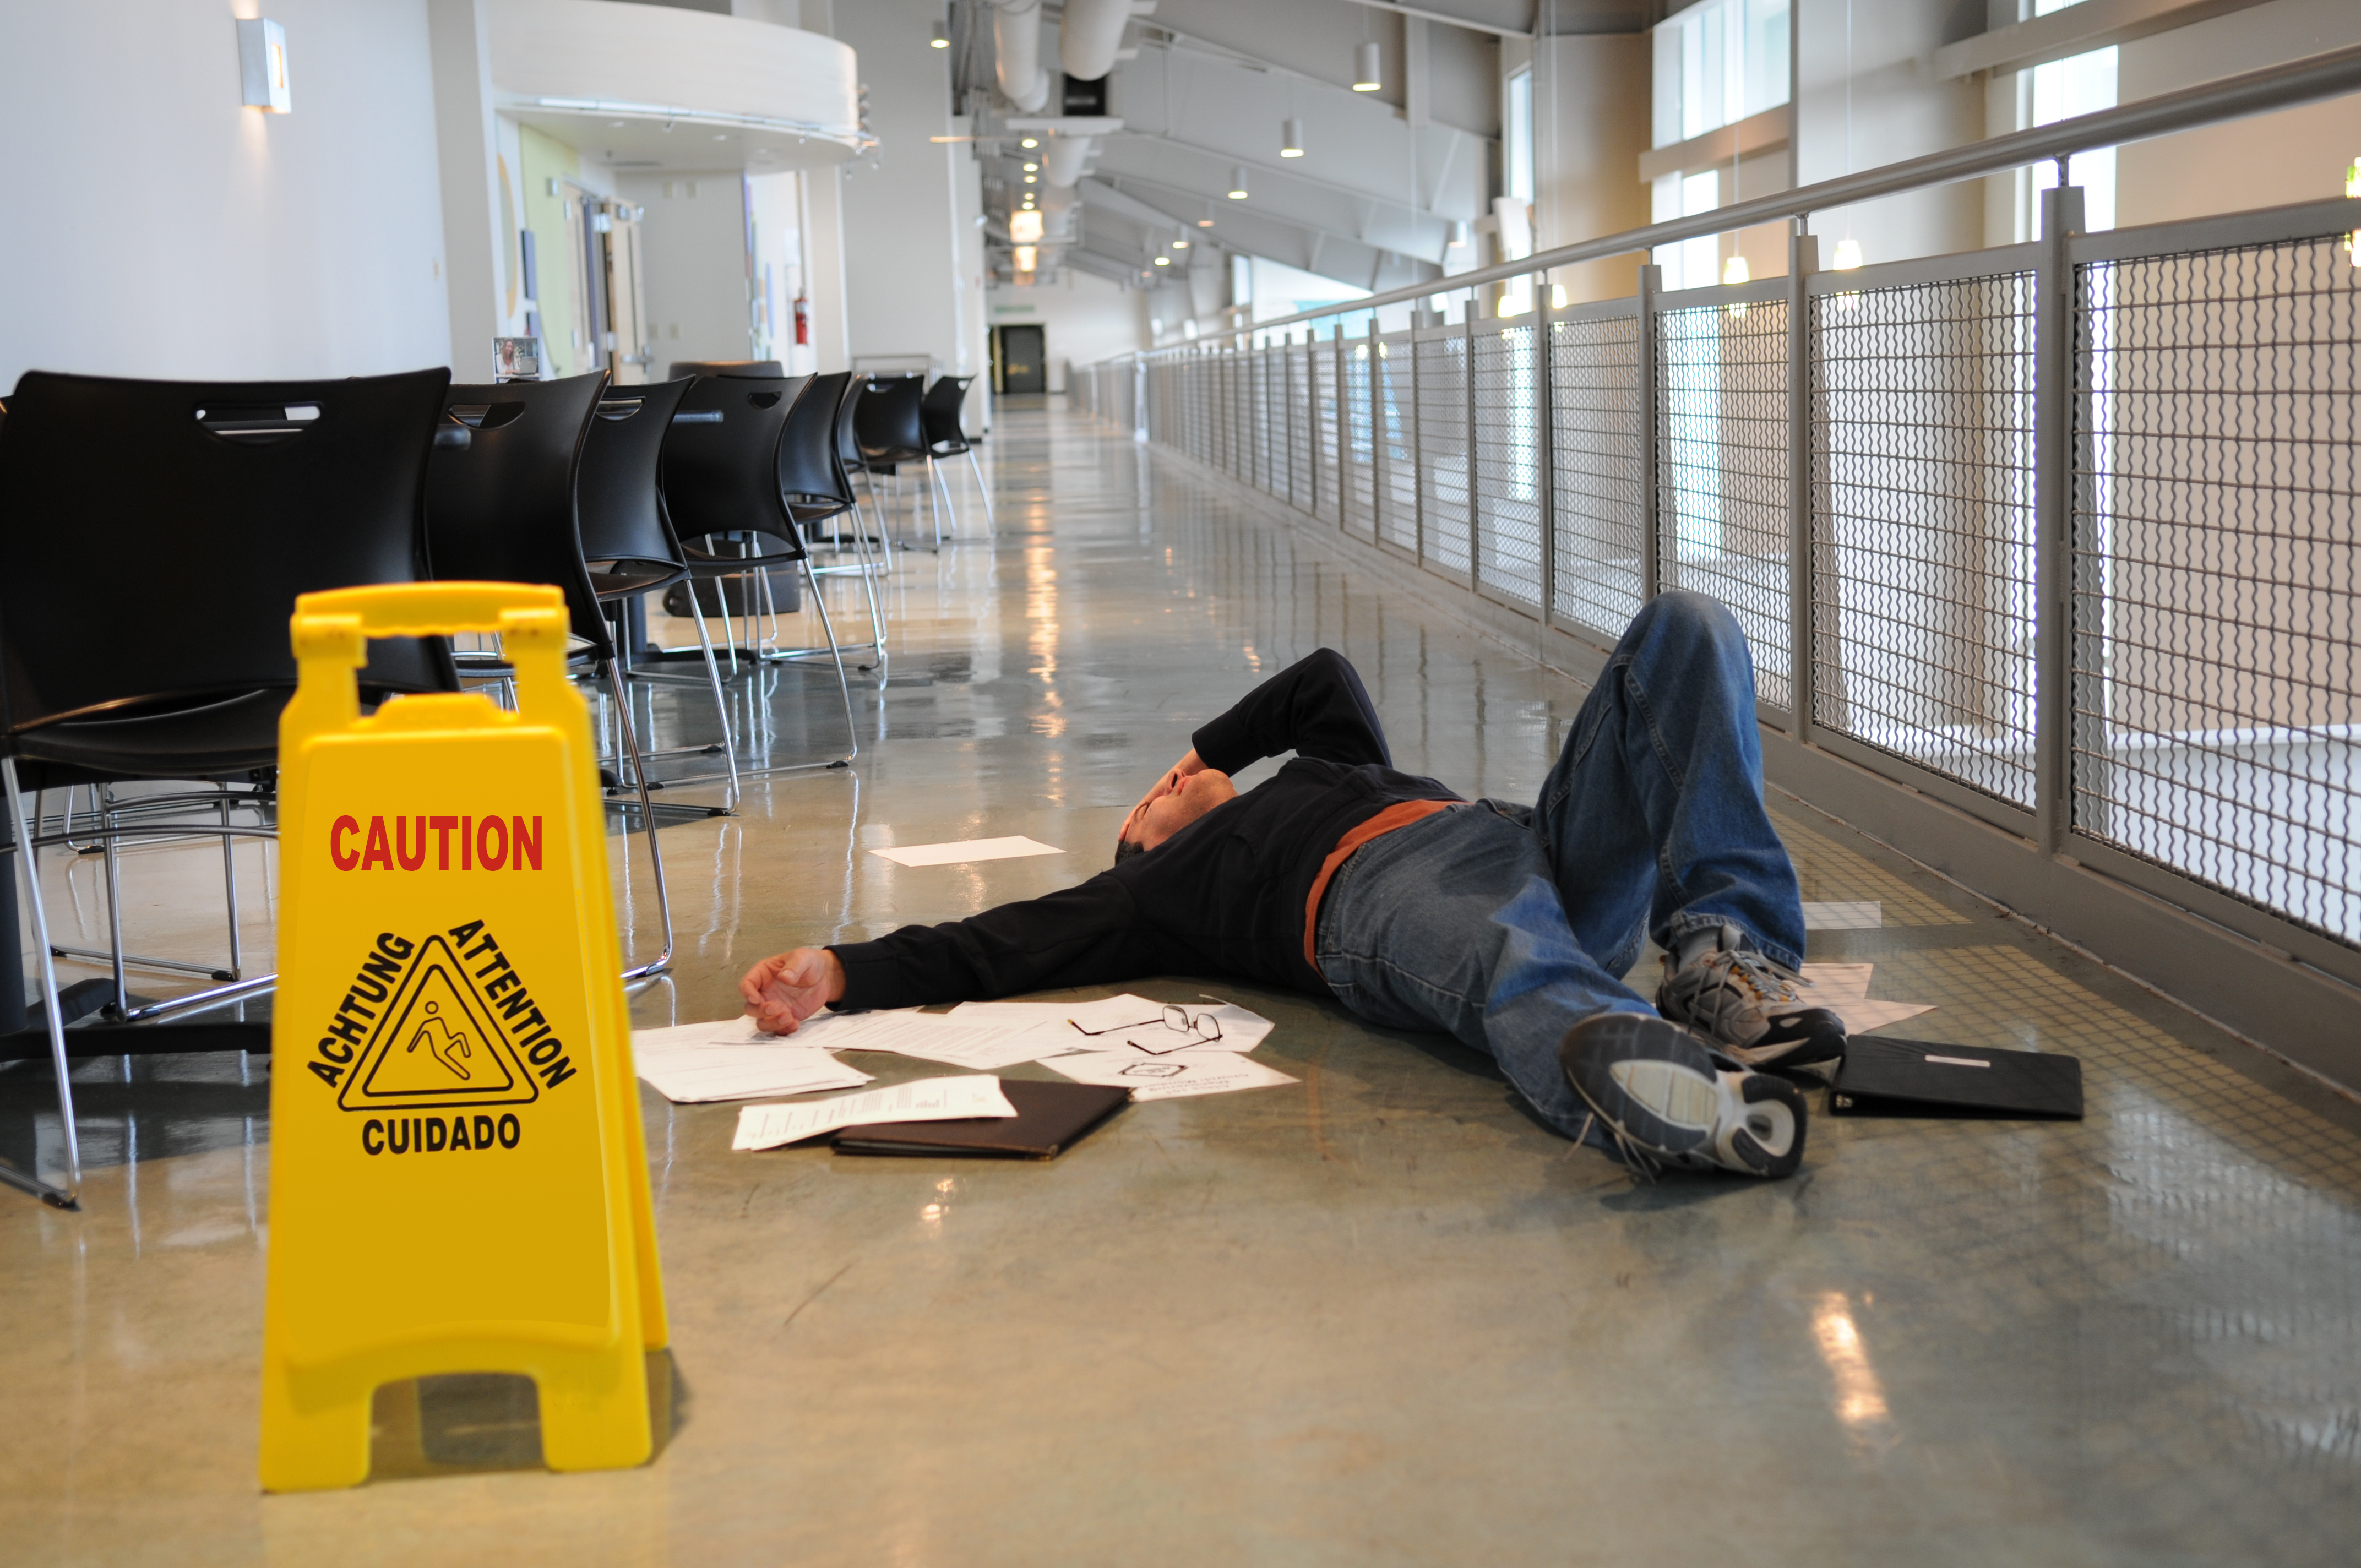 Man Lying on Slippery Floor